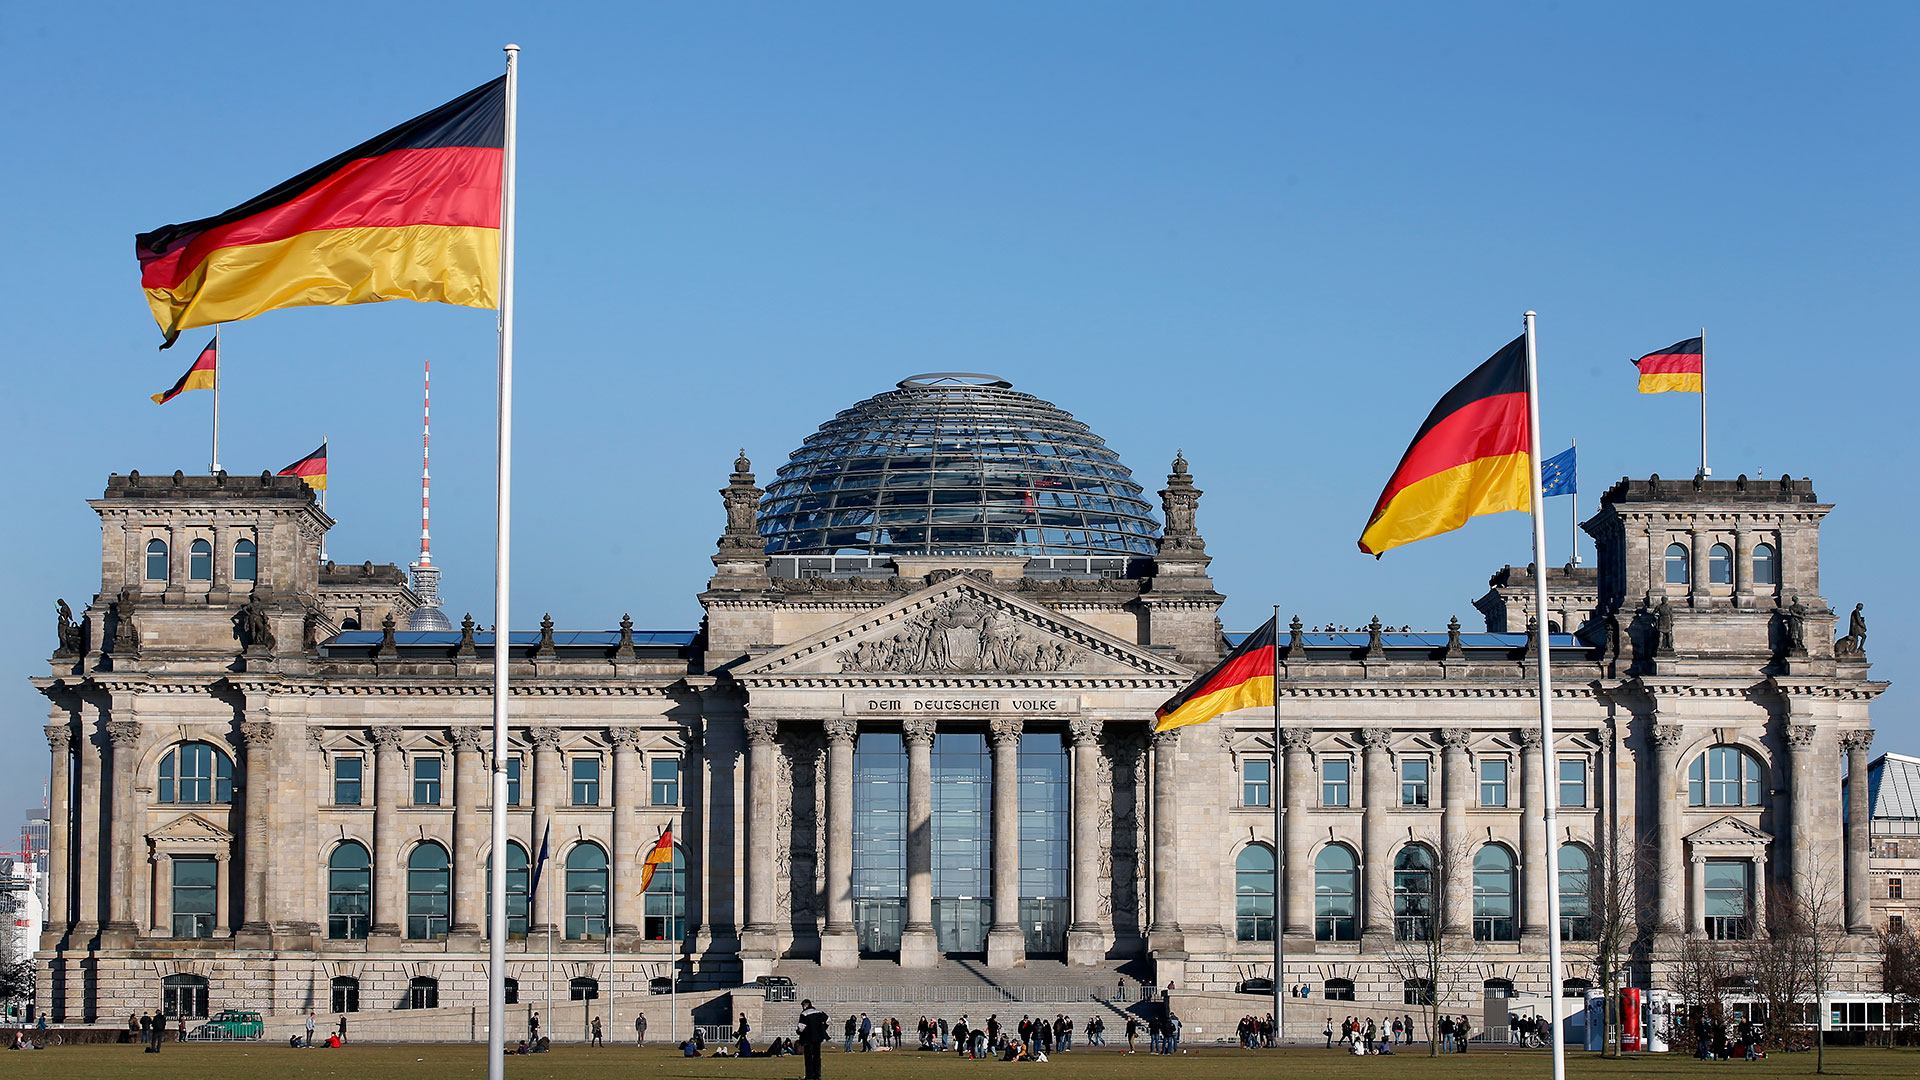 Γερμανία: Οι υποψήφιοι για ιθαγένεια πρέπει να αναγνωρίζουν το δικαίωμα του Ισραήλ να υπάρχει ως κράτος